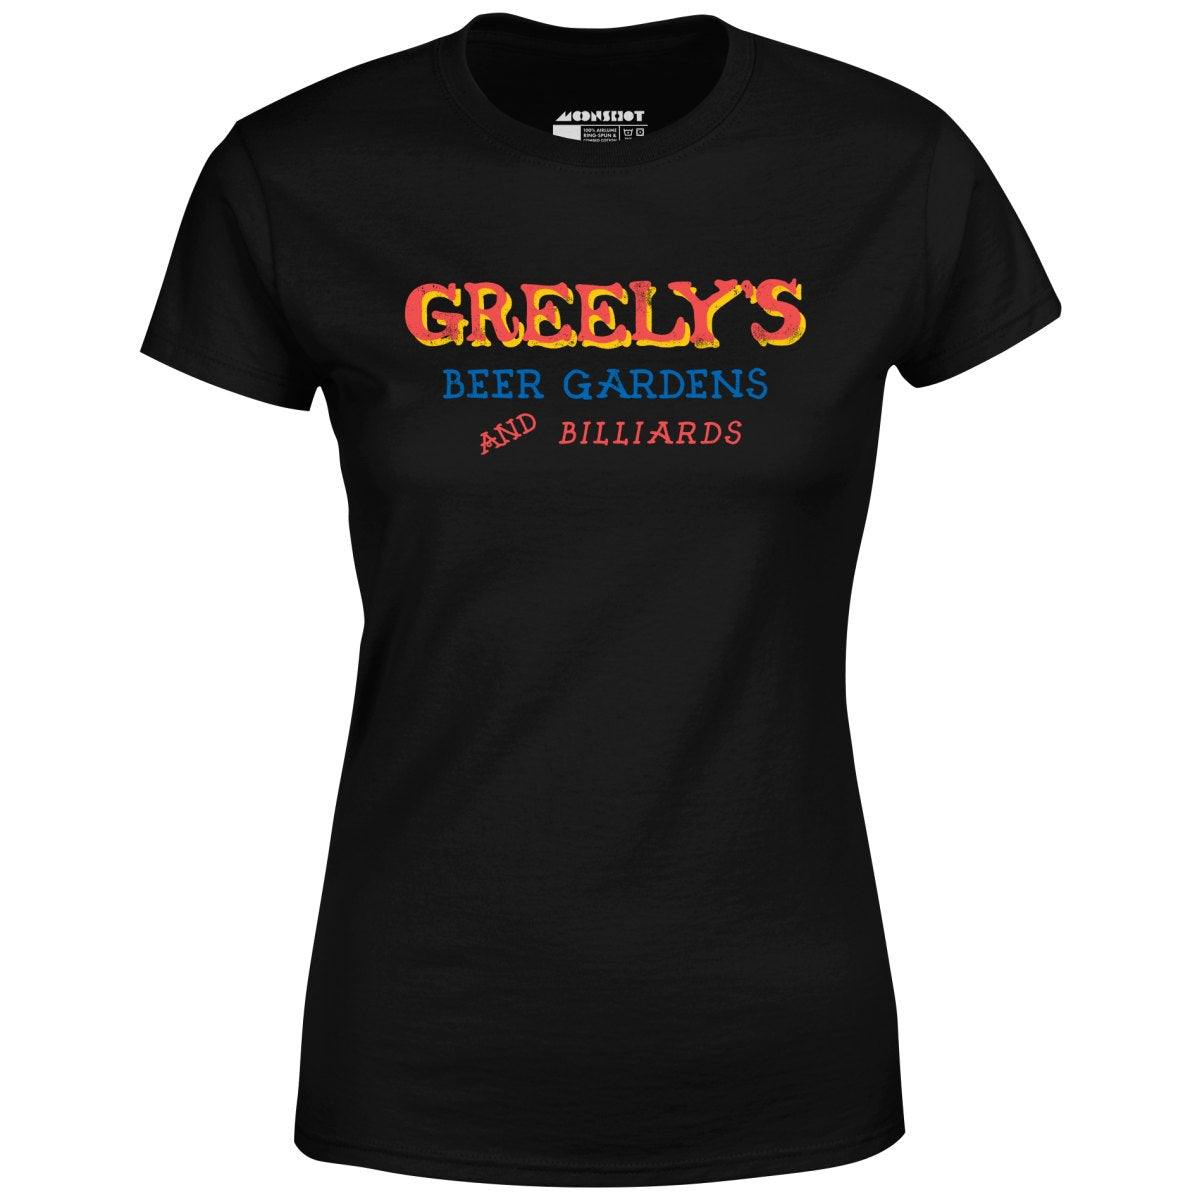 Greely's Beer Gardens & Billiards - Women's T-Shirt